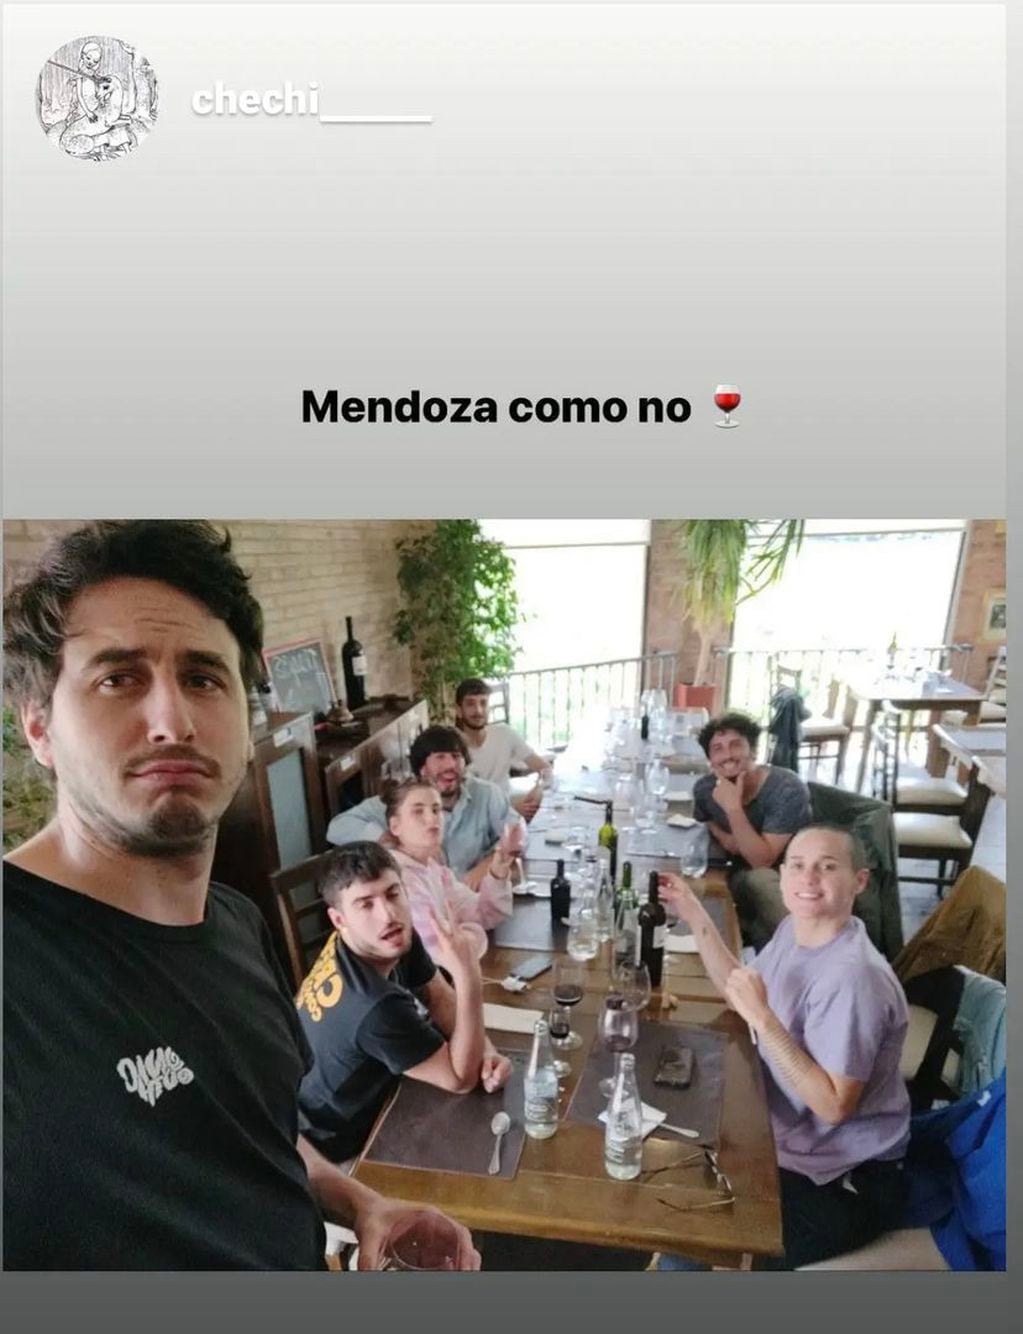 Mateo y los demás participantes de su banda eligieron a Mendoza para tomar su día libre, para disfrutar de la gastronomía mendocina. 